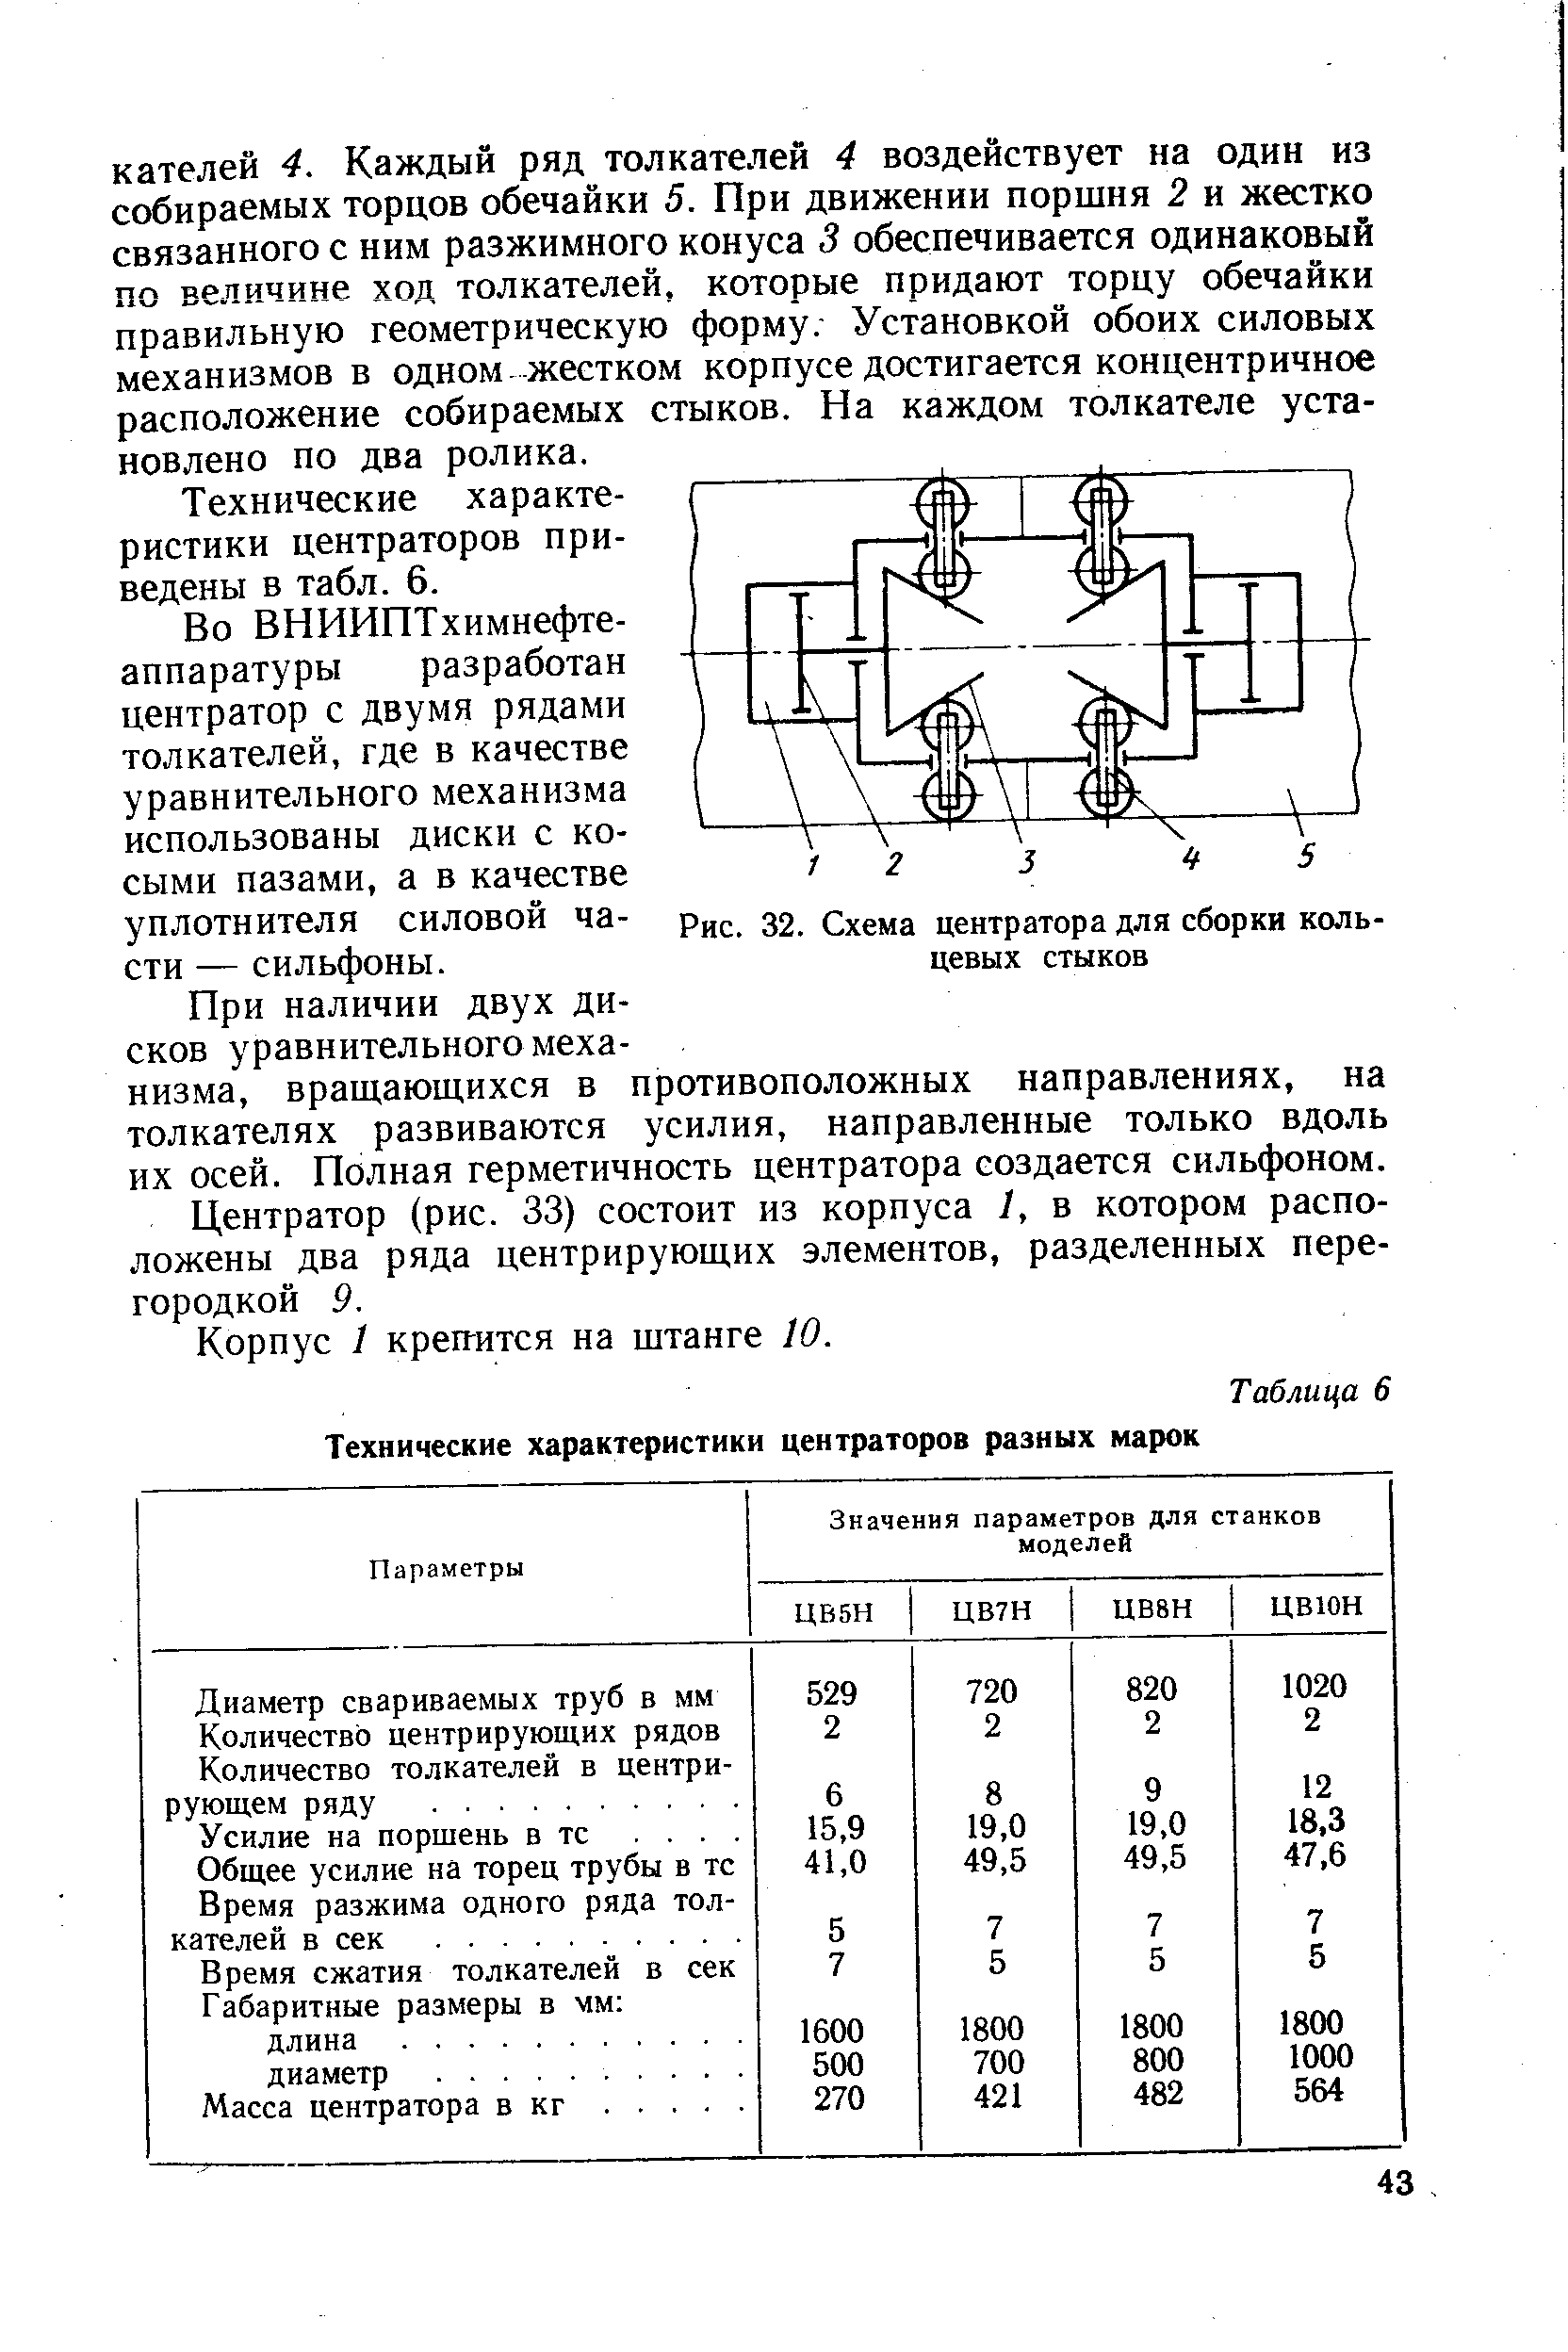 Рис. 32. Схема центратора для сборки кольцевых стыков
